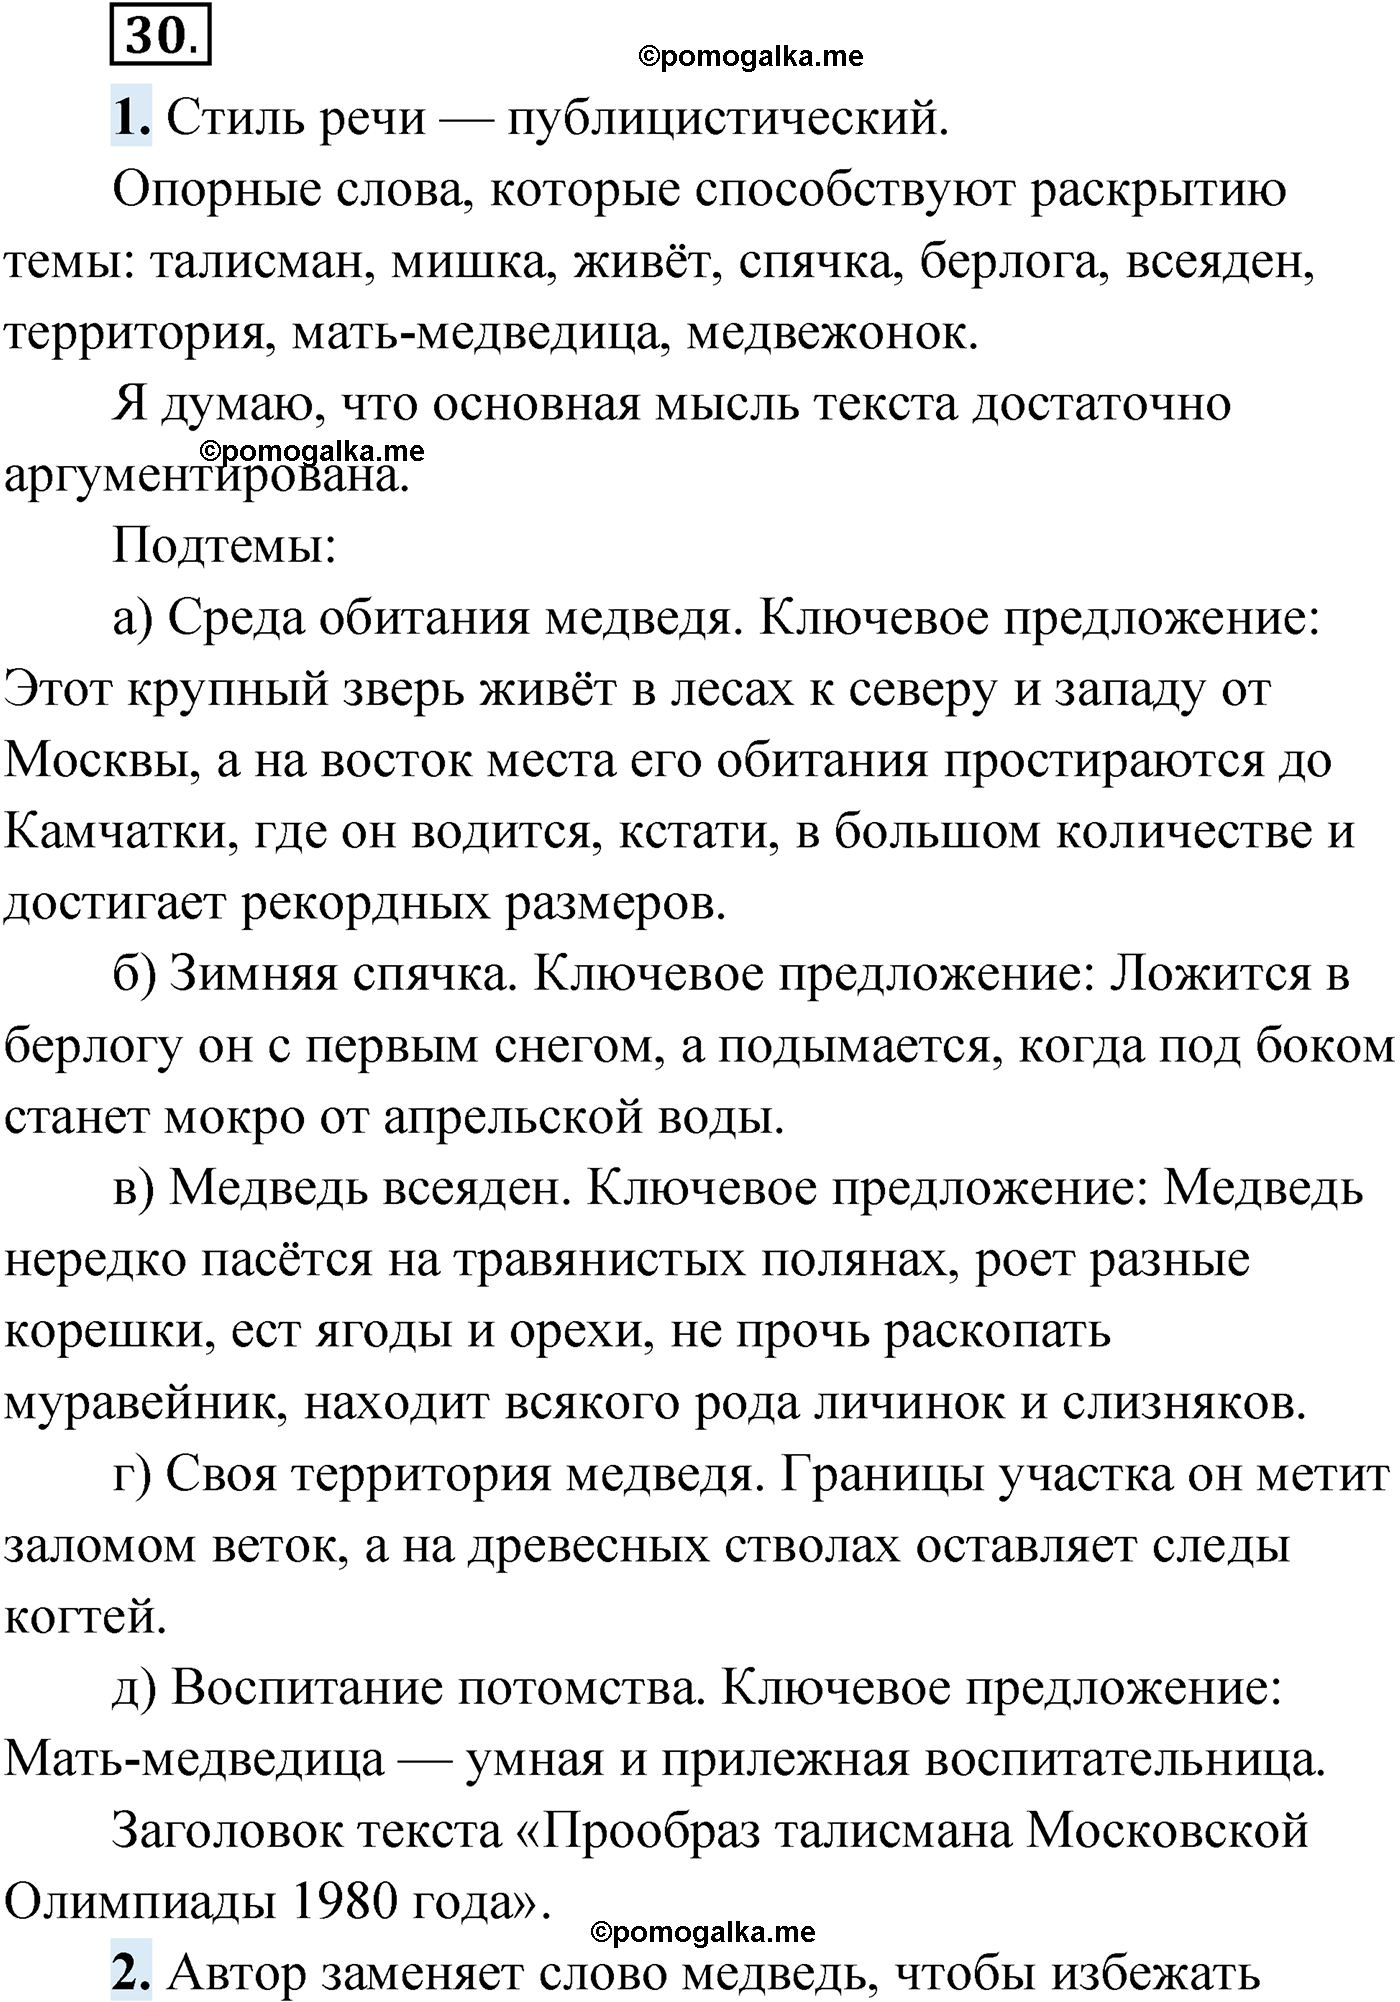 упражнение №30 русский язык 9 класс Мурина 2019 год